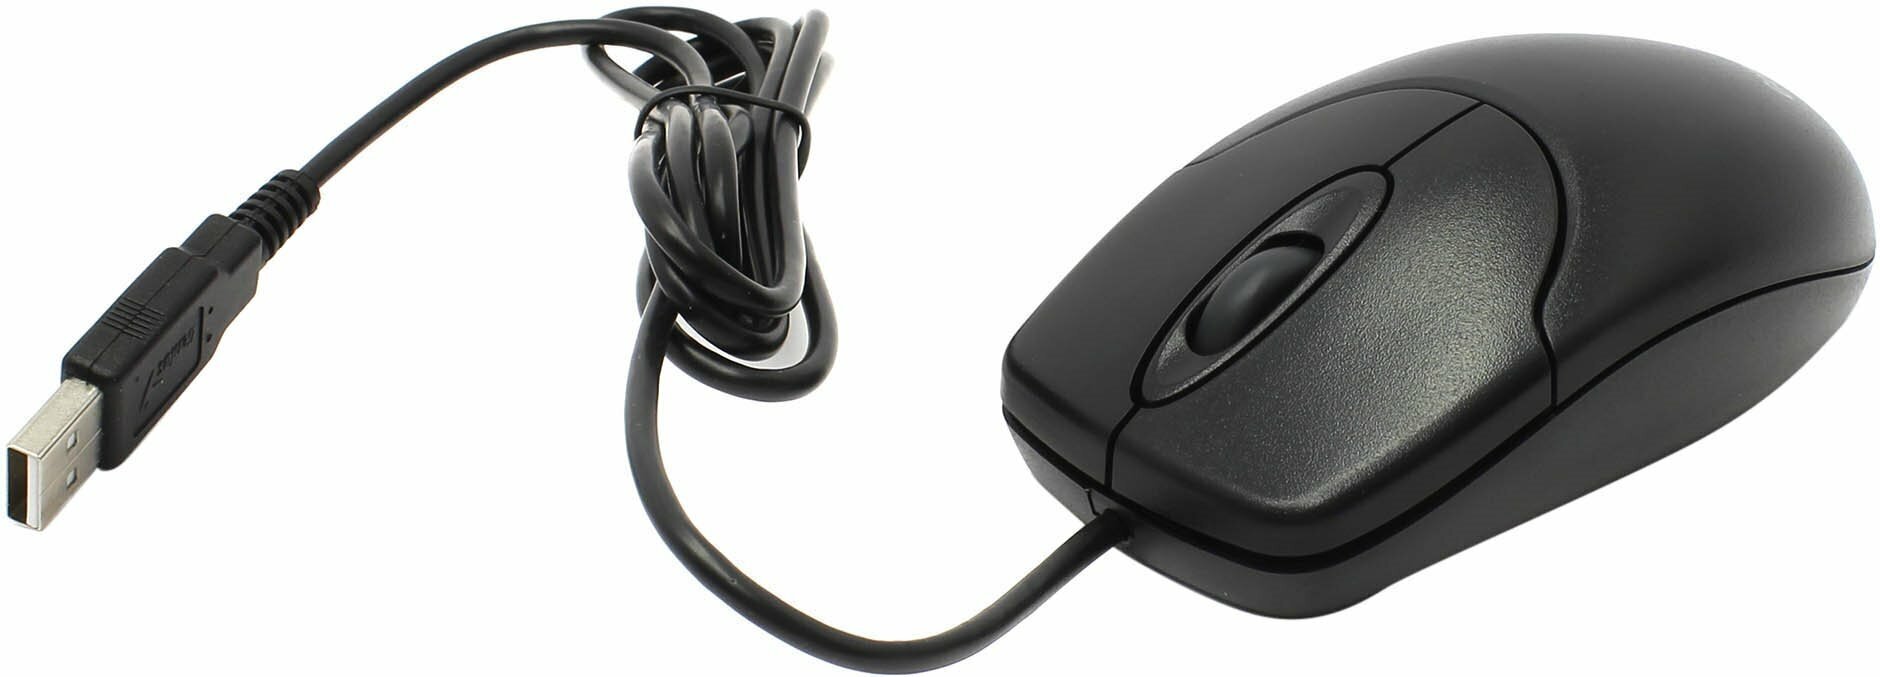 Мышь Genius NetScroll 120 V2, USB (чёрная, оптическая 1000dpi)